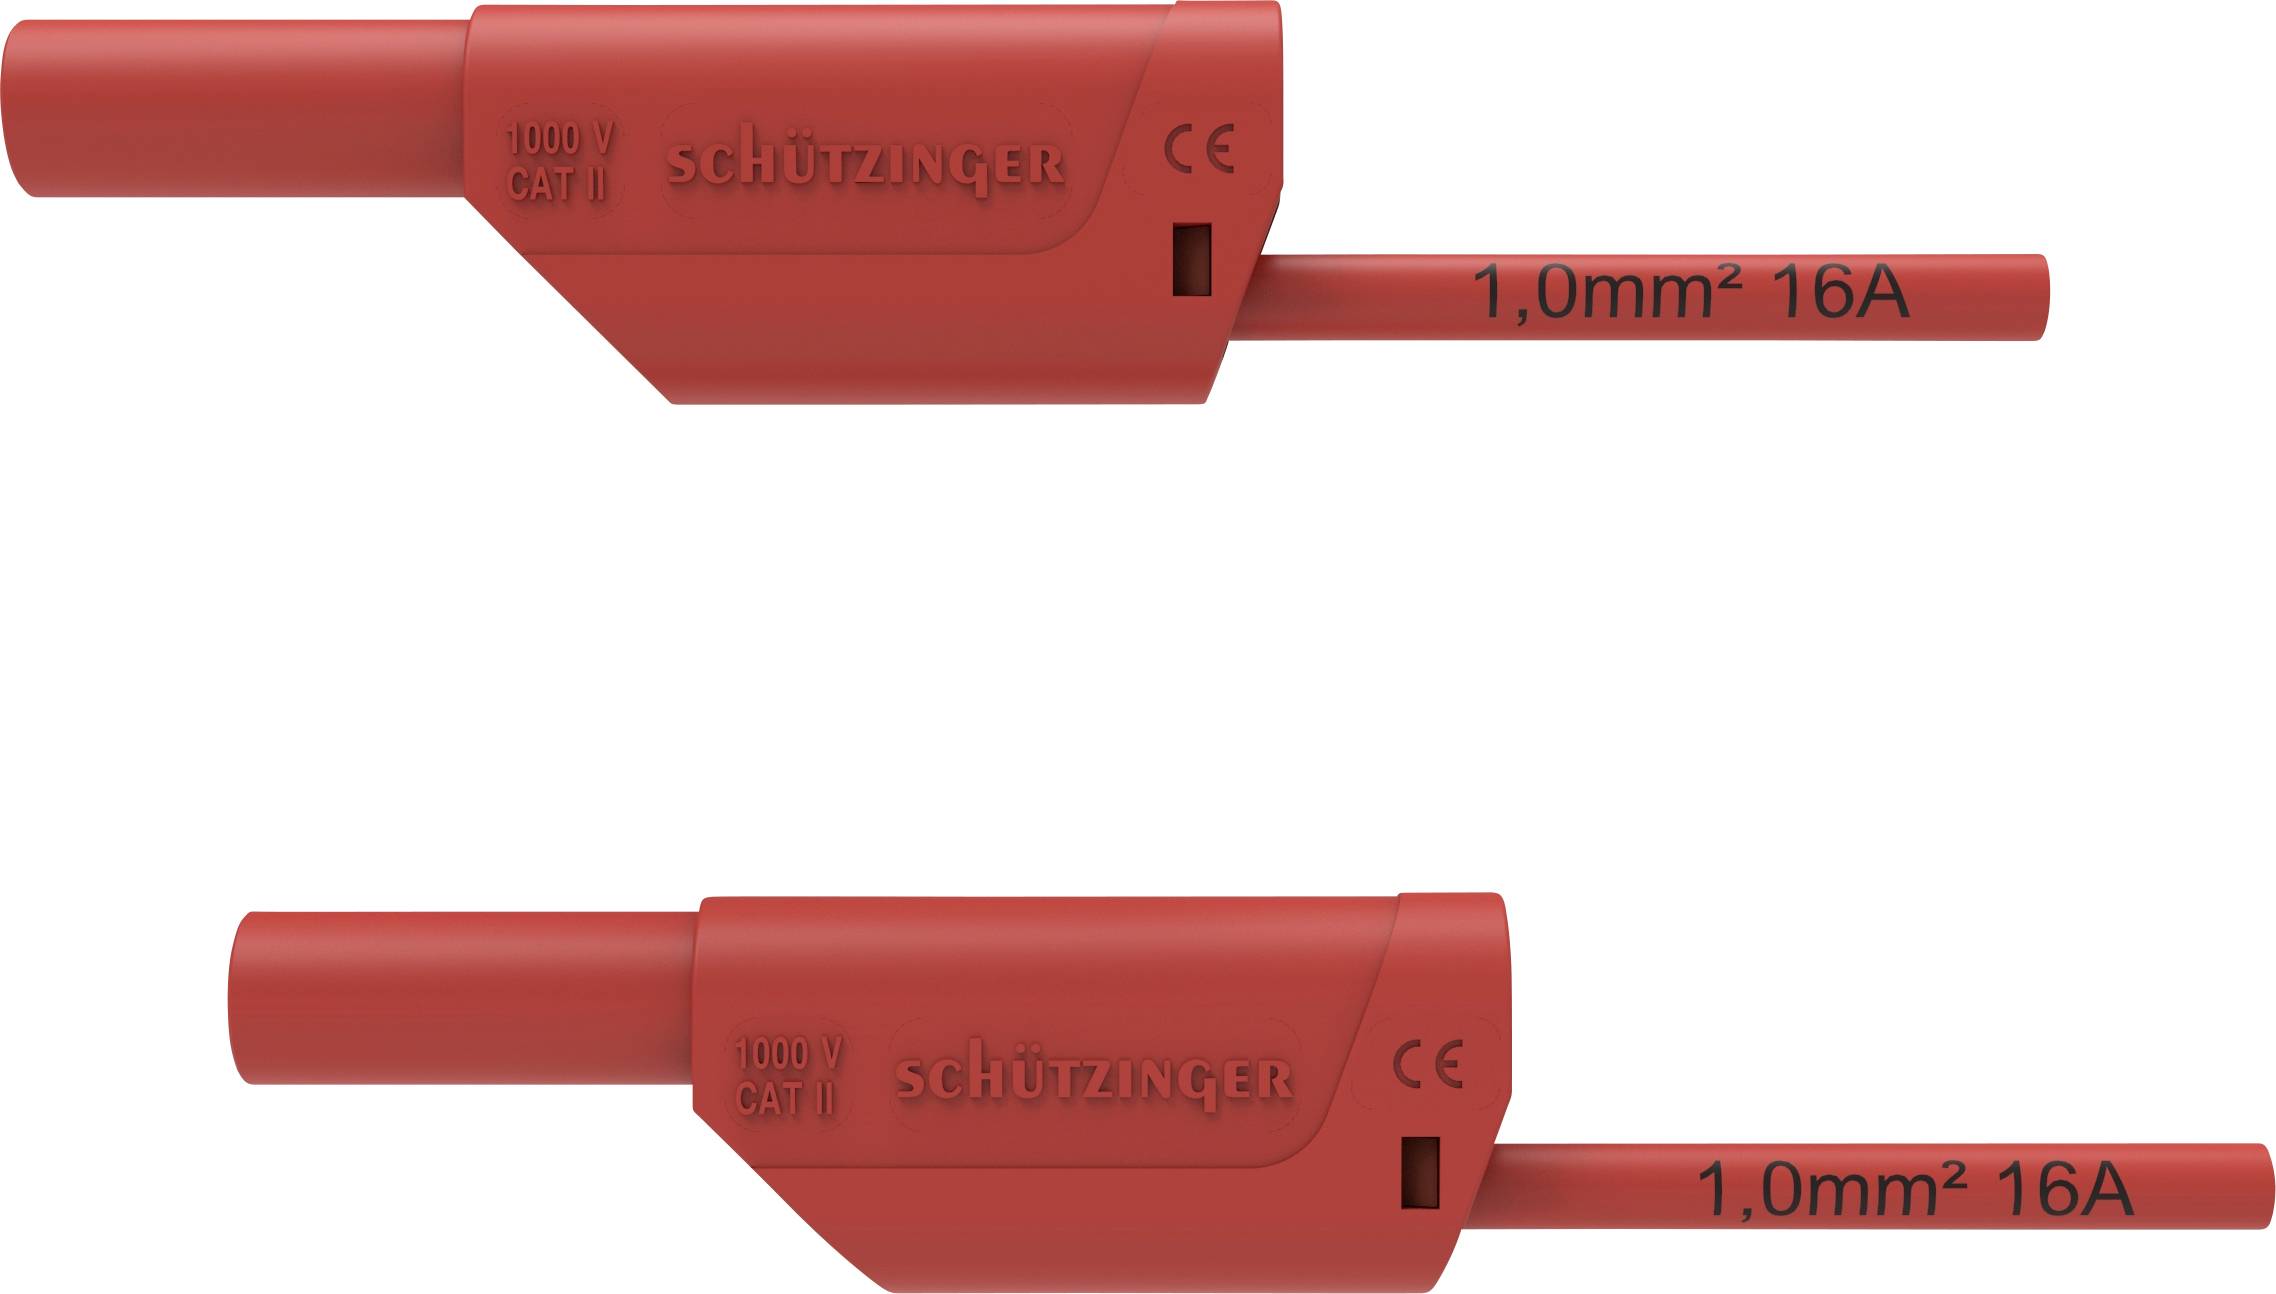 SCHÜTZINGER VSFK 8500 / 1 / 200 / RT Sicherheits-Messleitung [4 mm-Stecker - 4 mm-Stecker] 200.